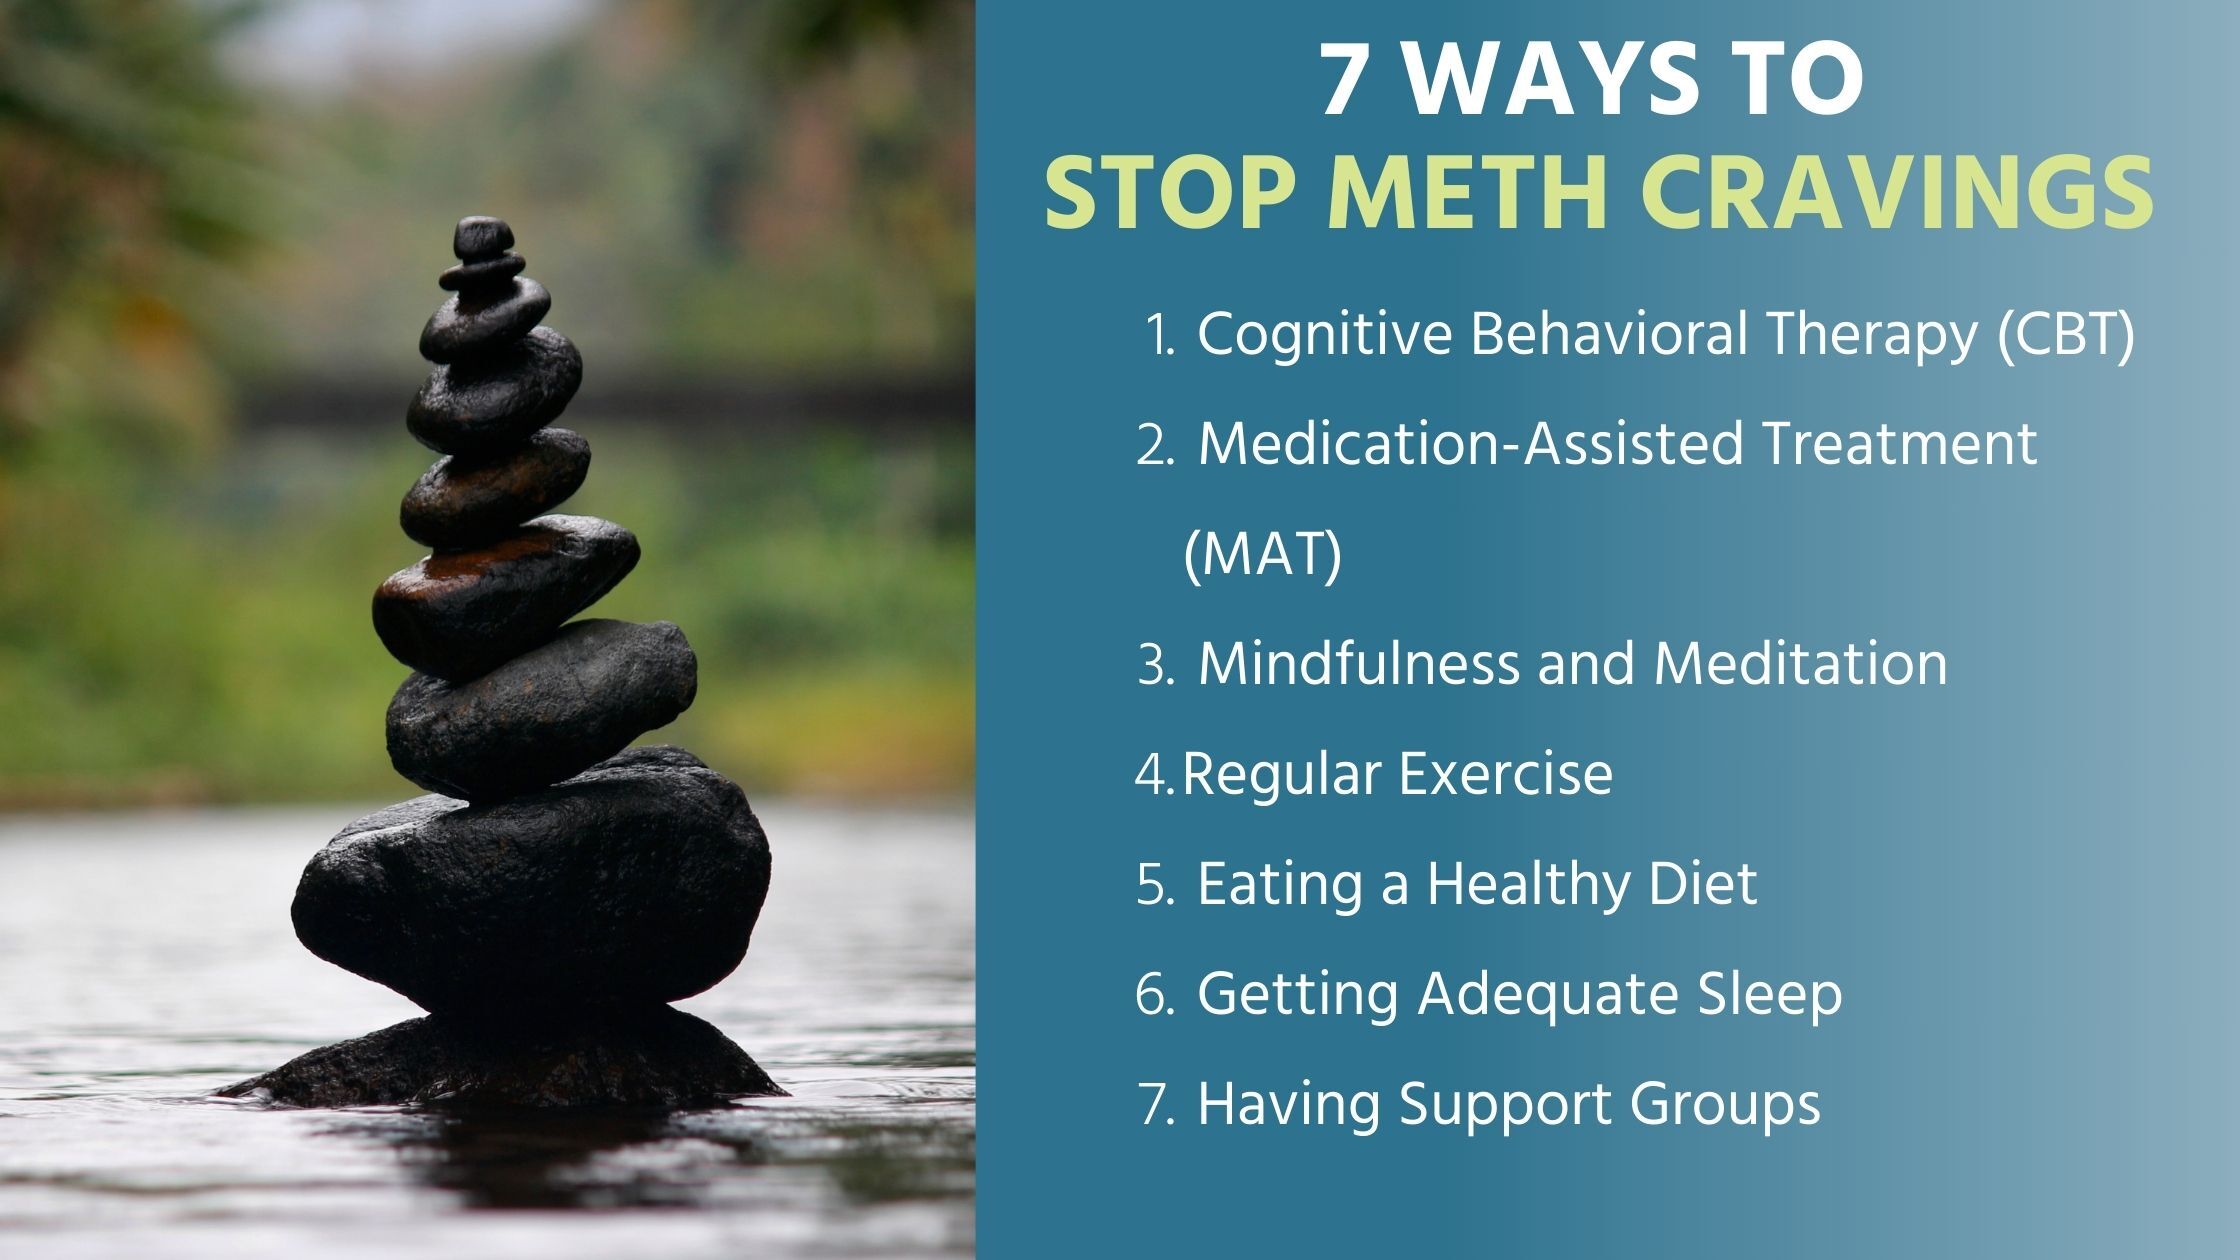 List of Ways To Stop Meth Cravings